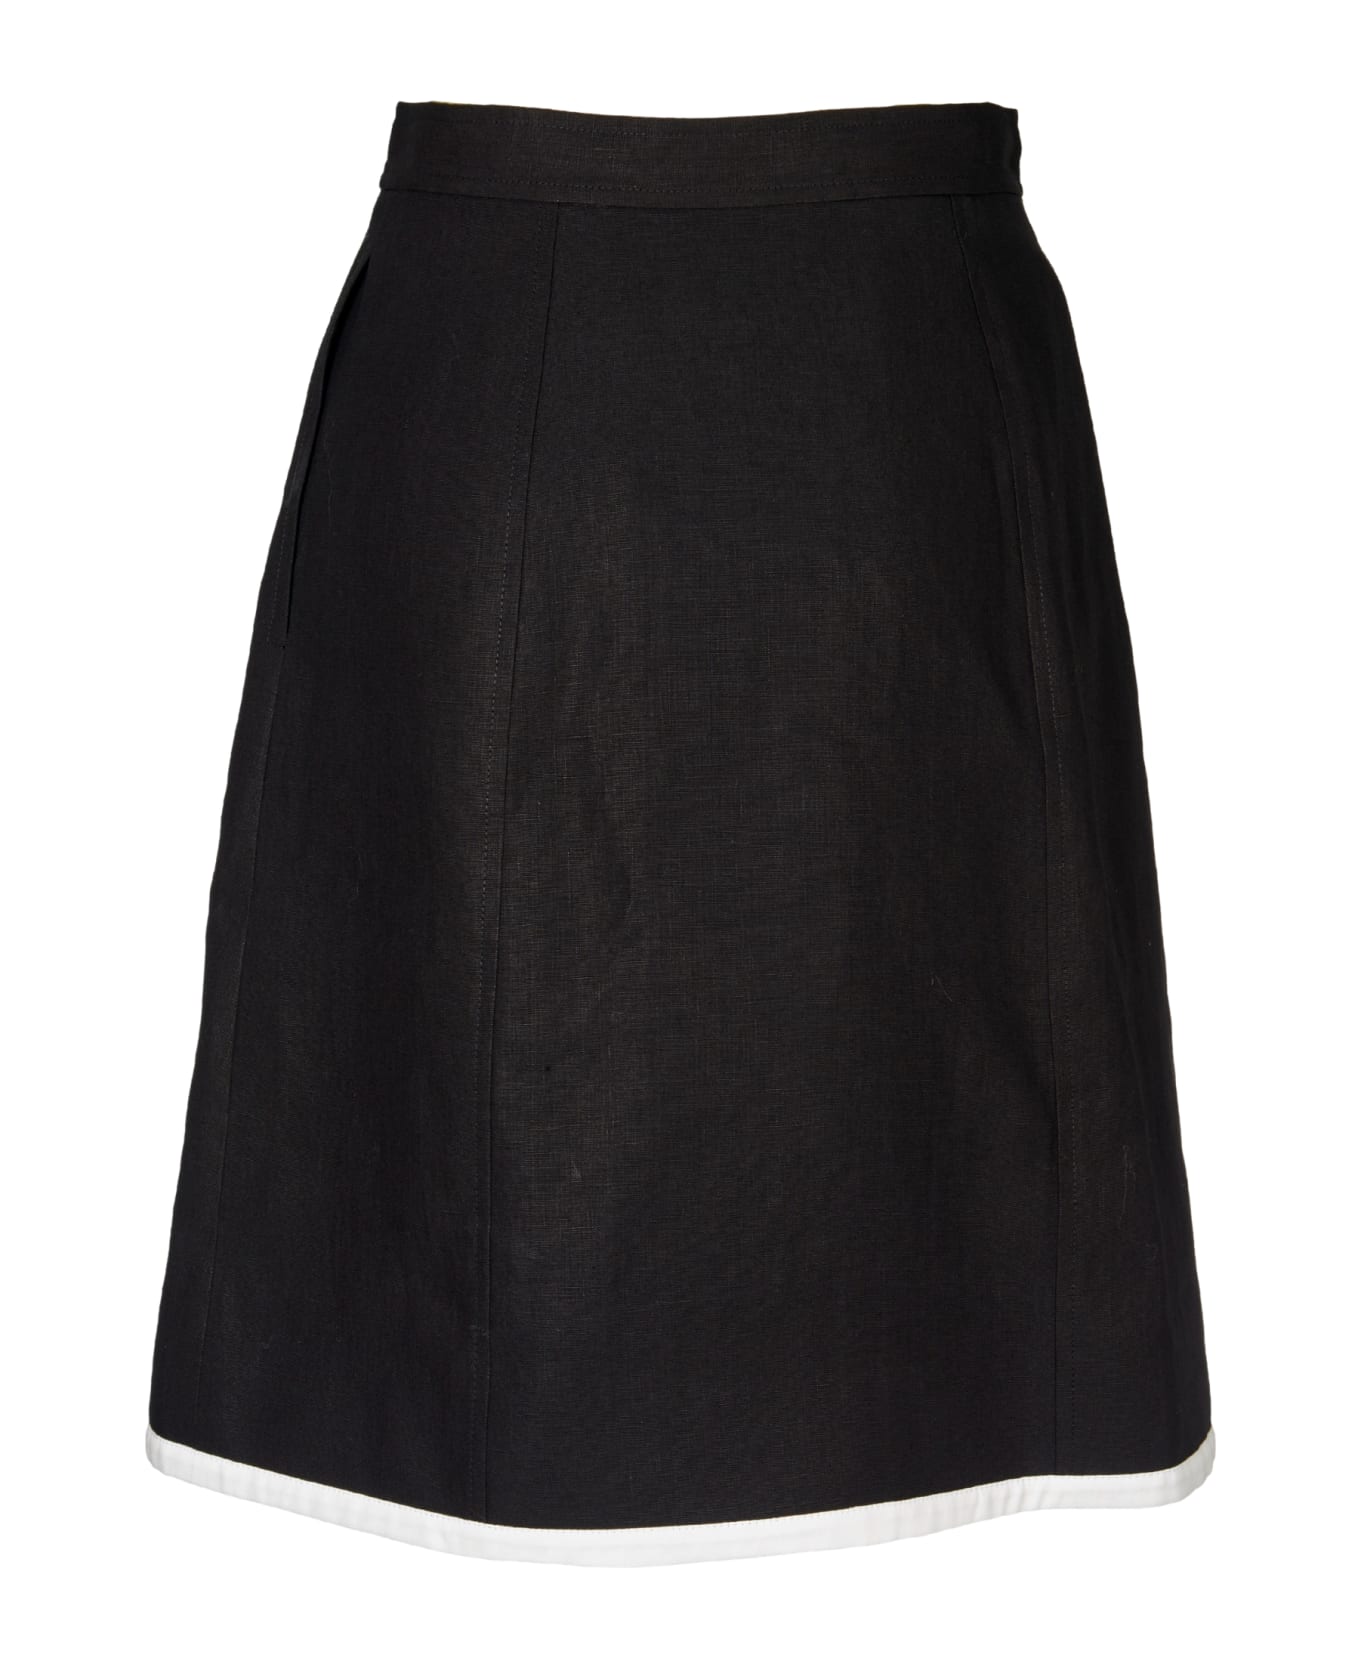 Paul Smith Skirt - Black スカート